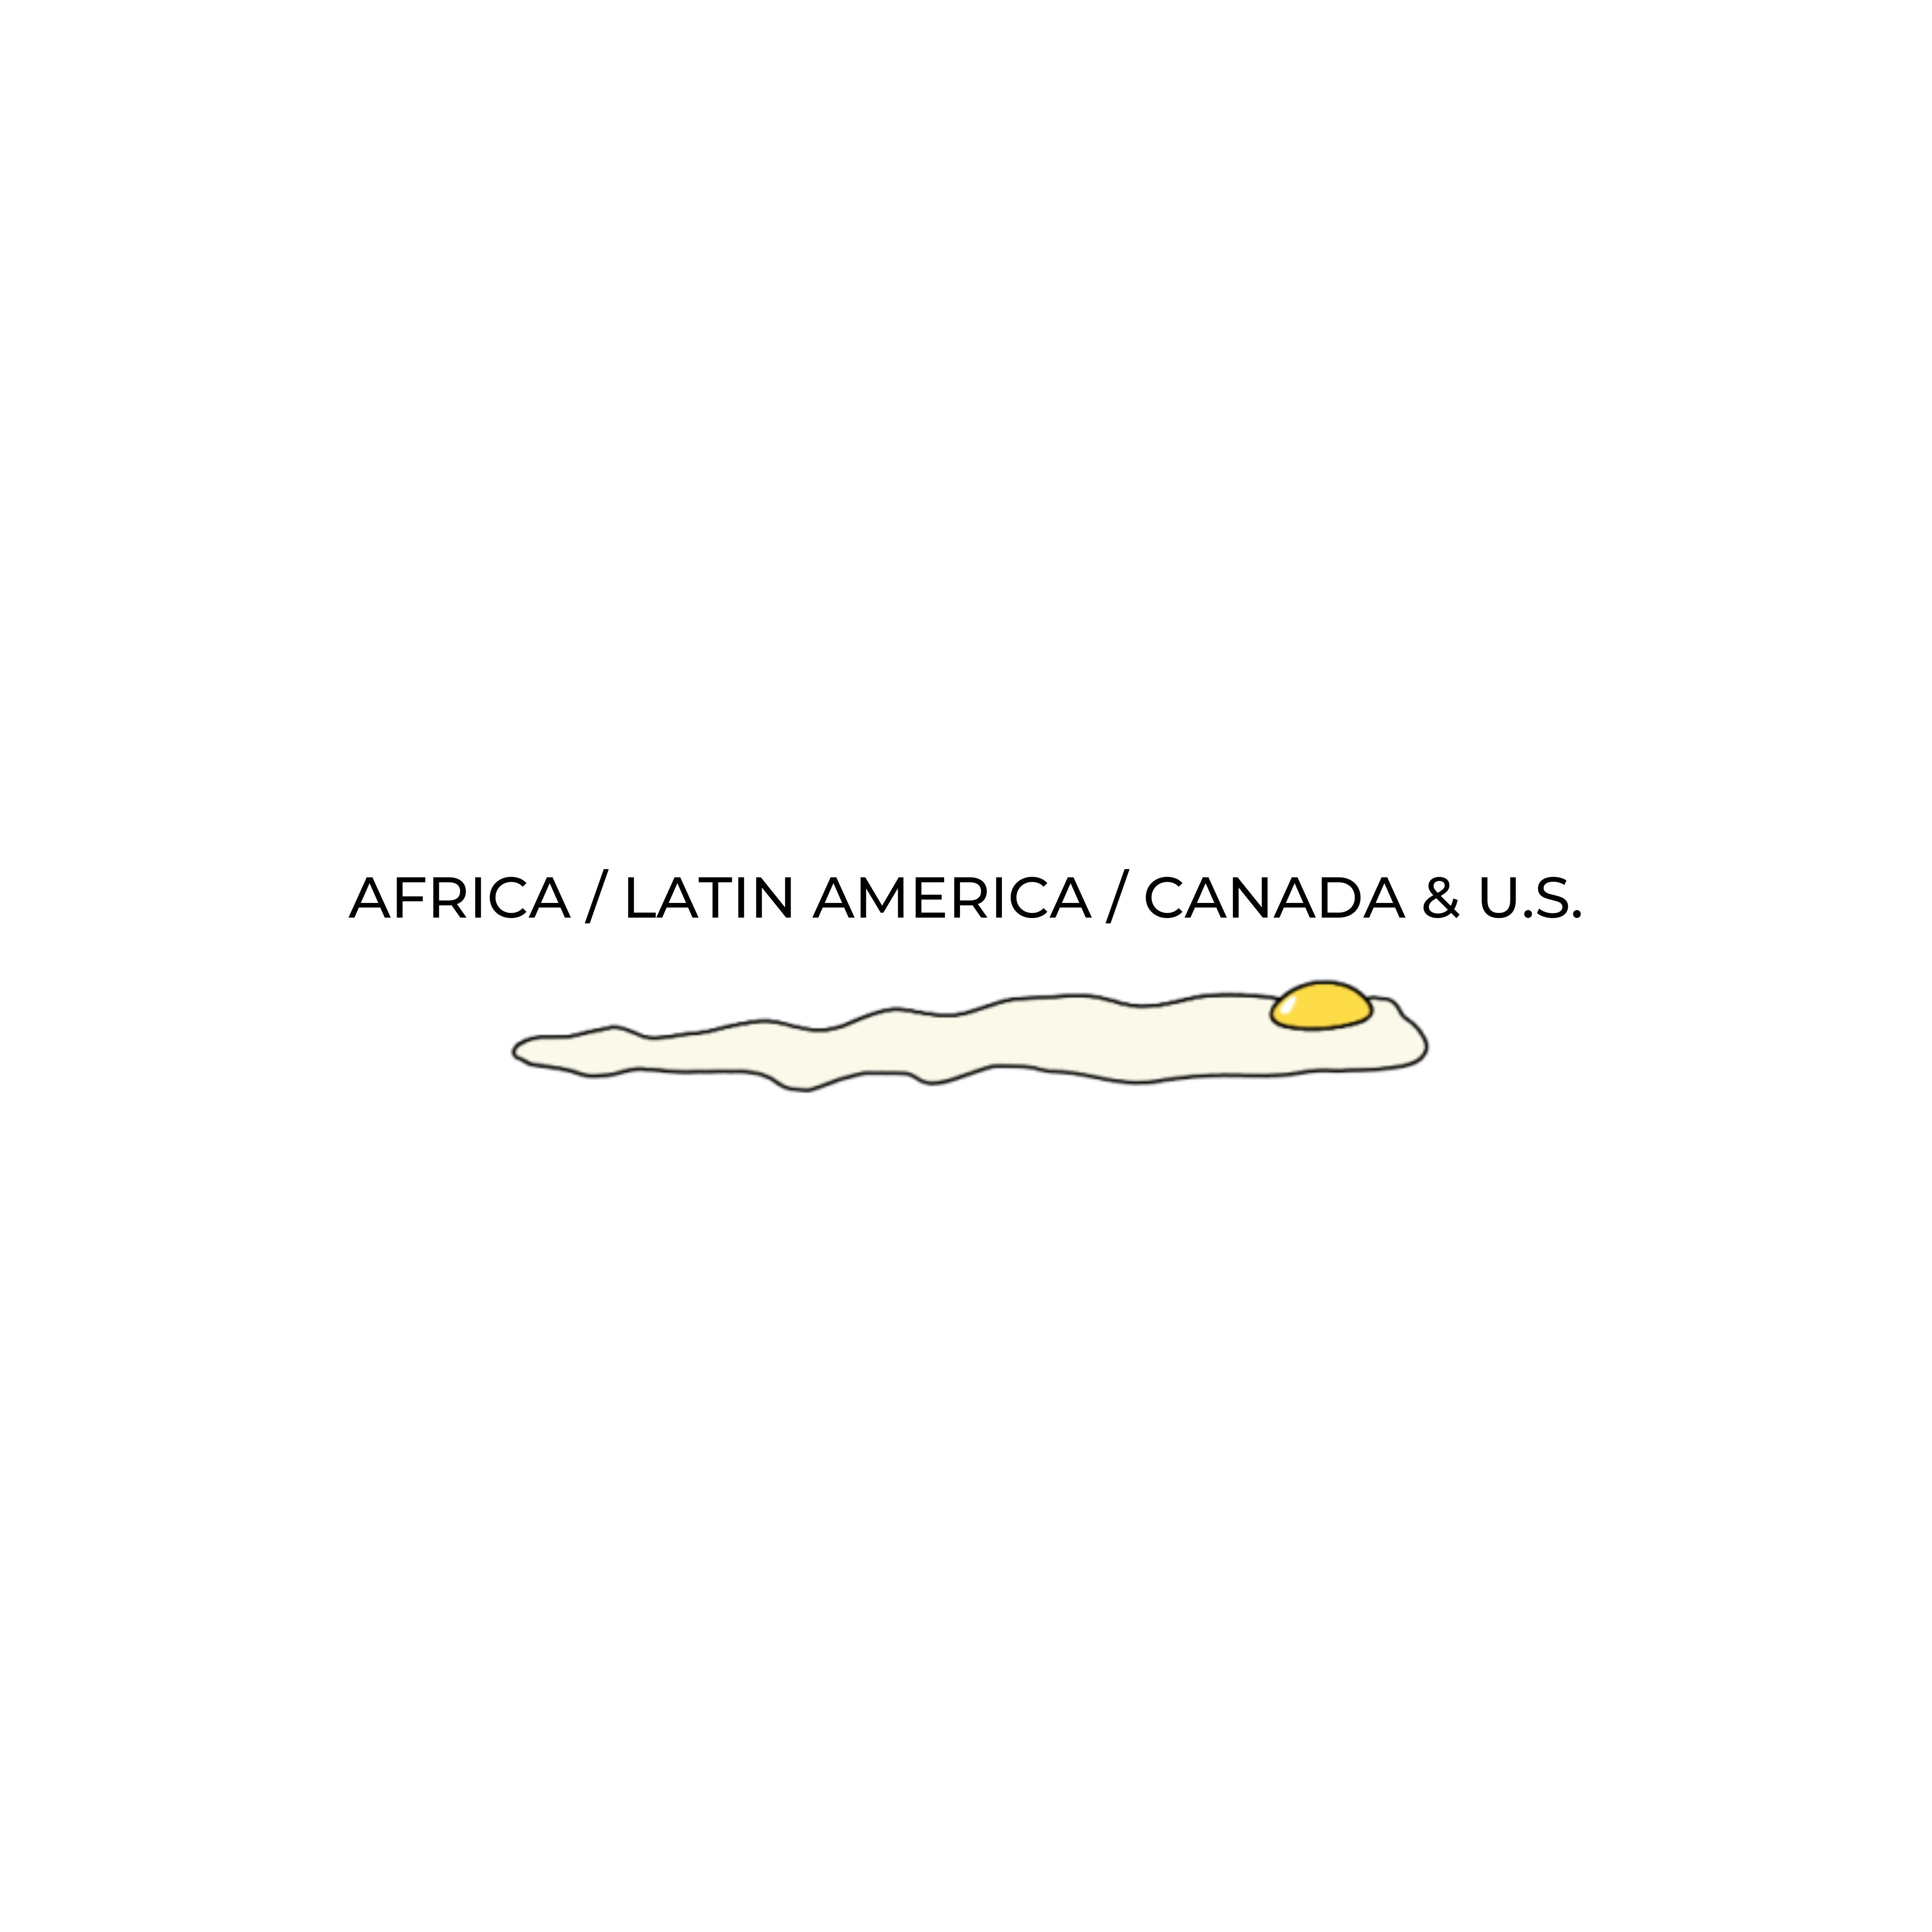 AFRICA / LATIN AMERICA / CANADA & U.S.